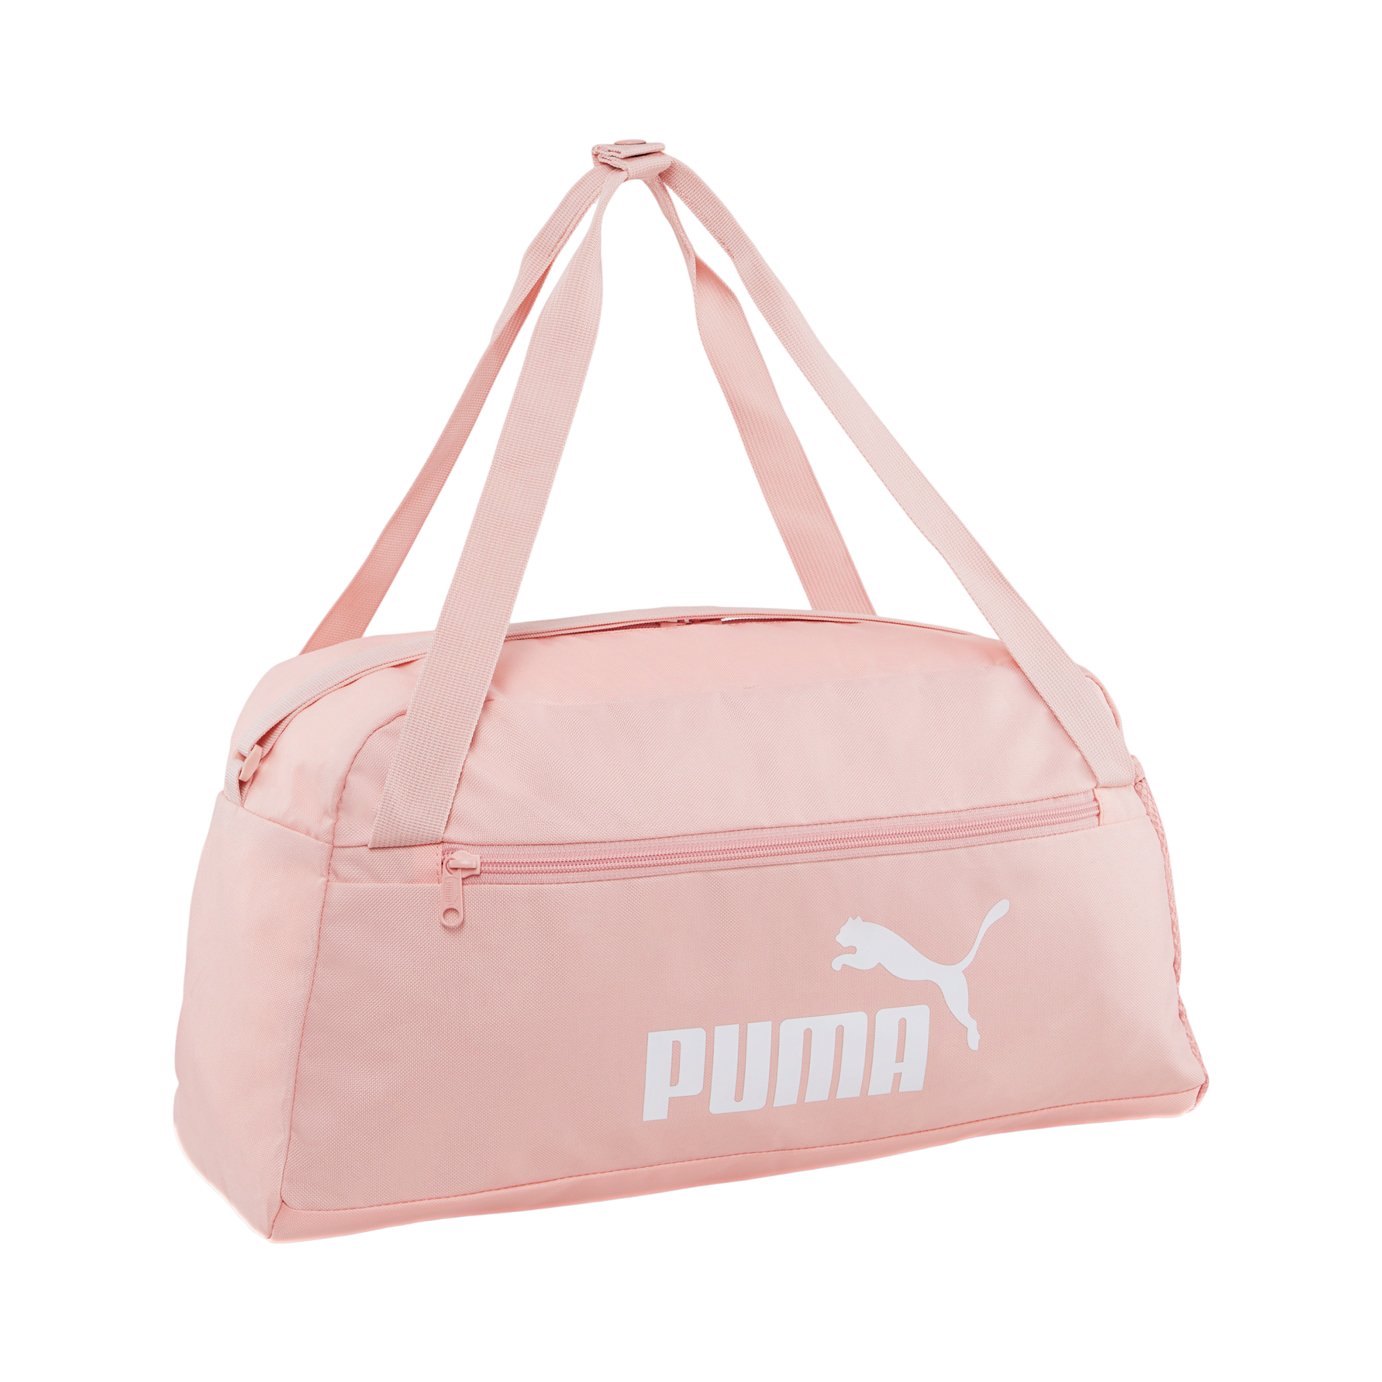 Puma Phase Sports Bag - Peach